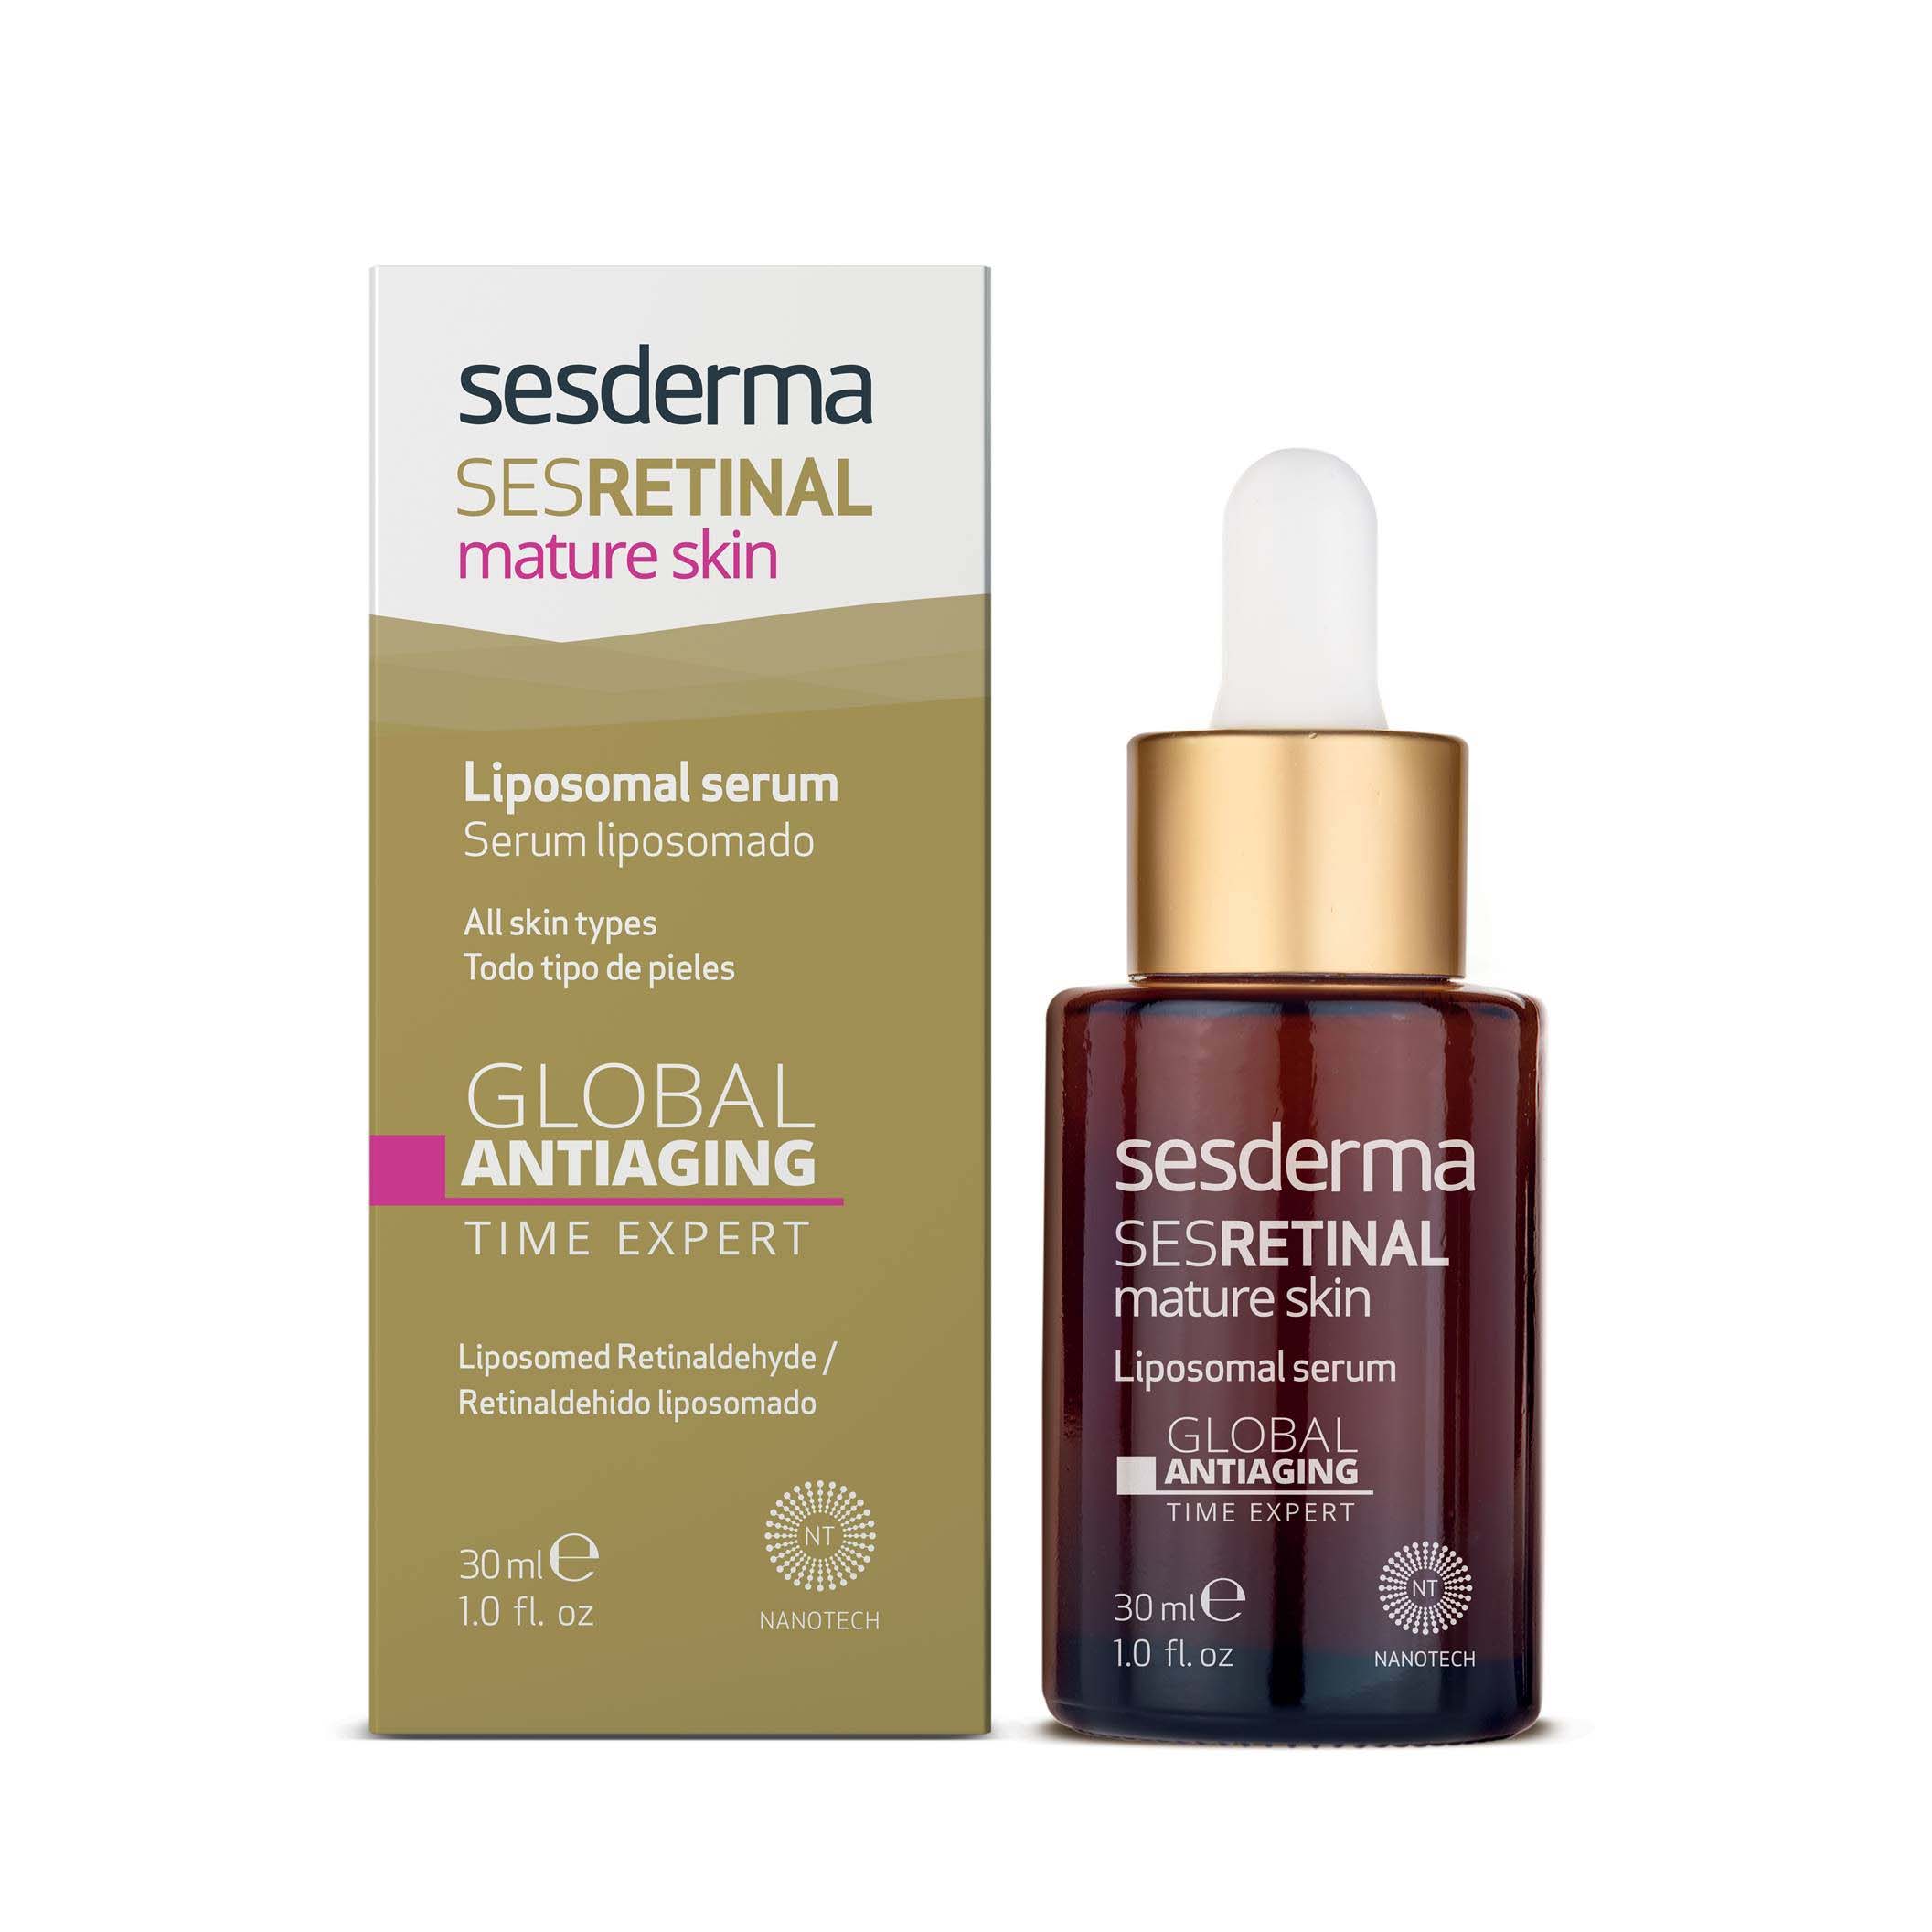 SESDERMA SESRETINAL Mature Skin Liposomal Serum